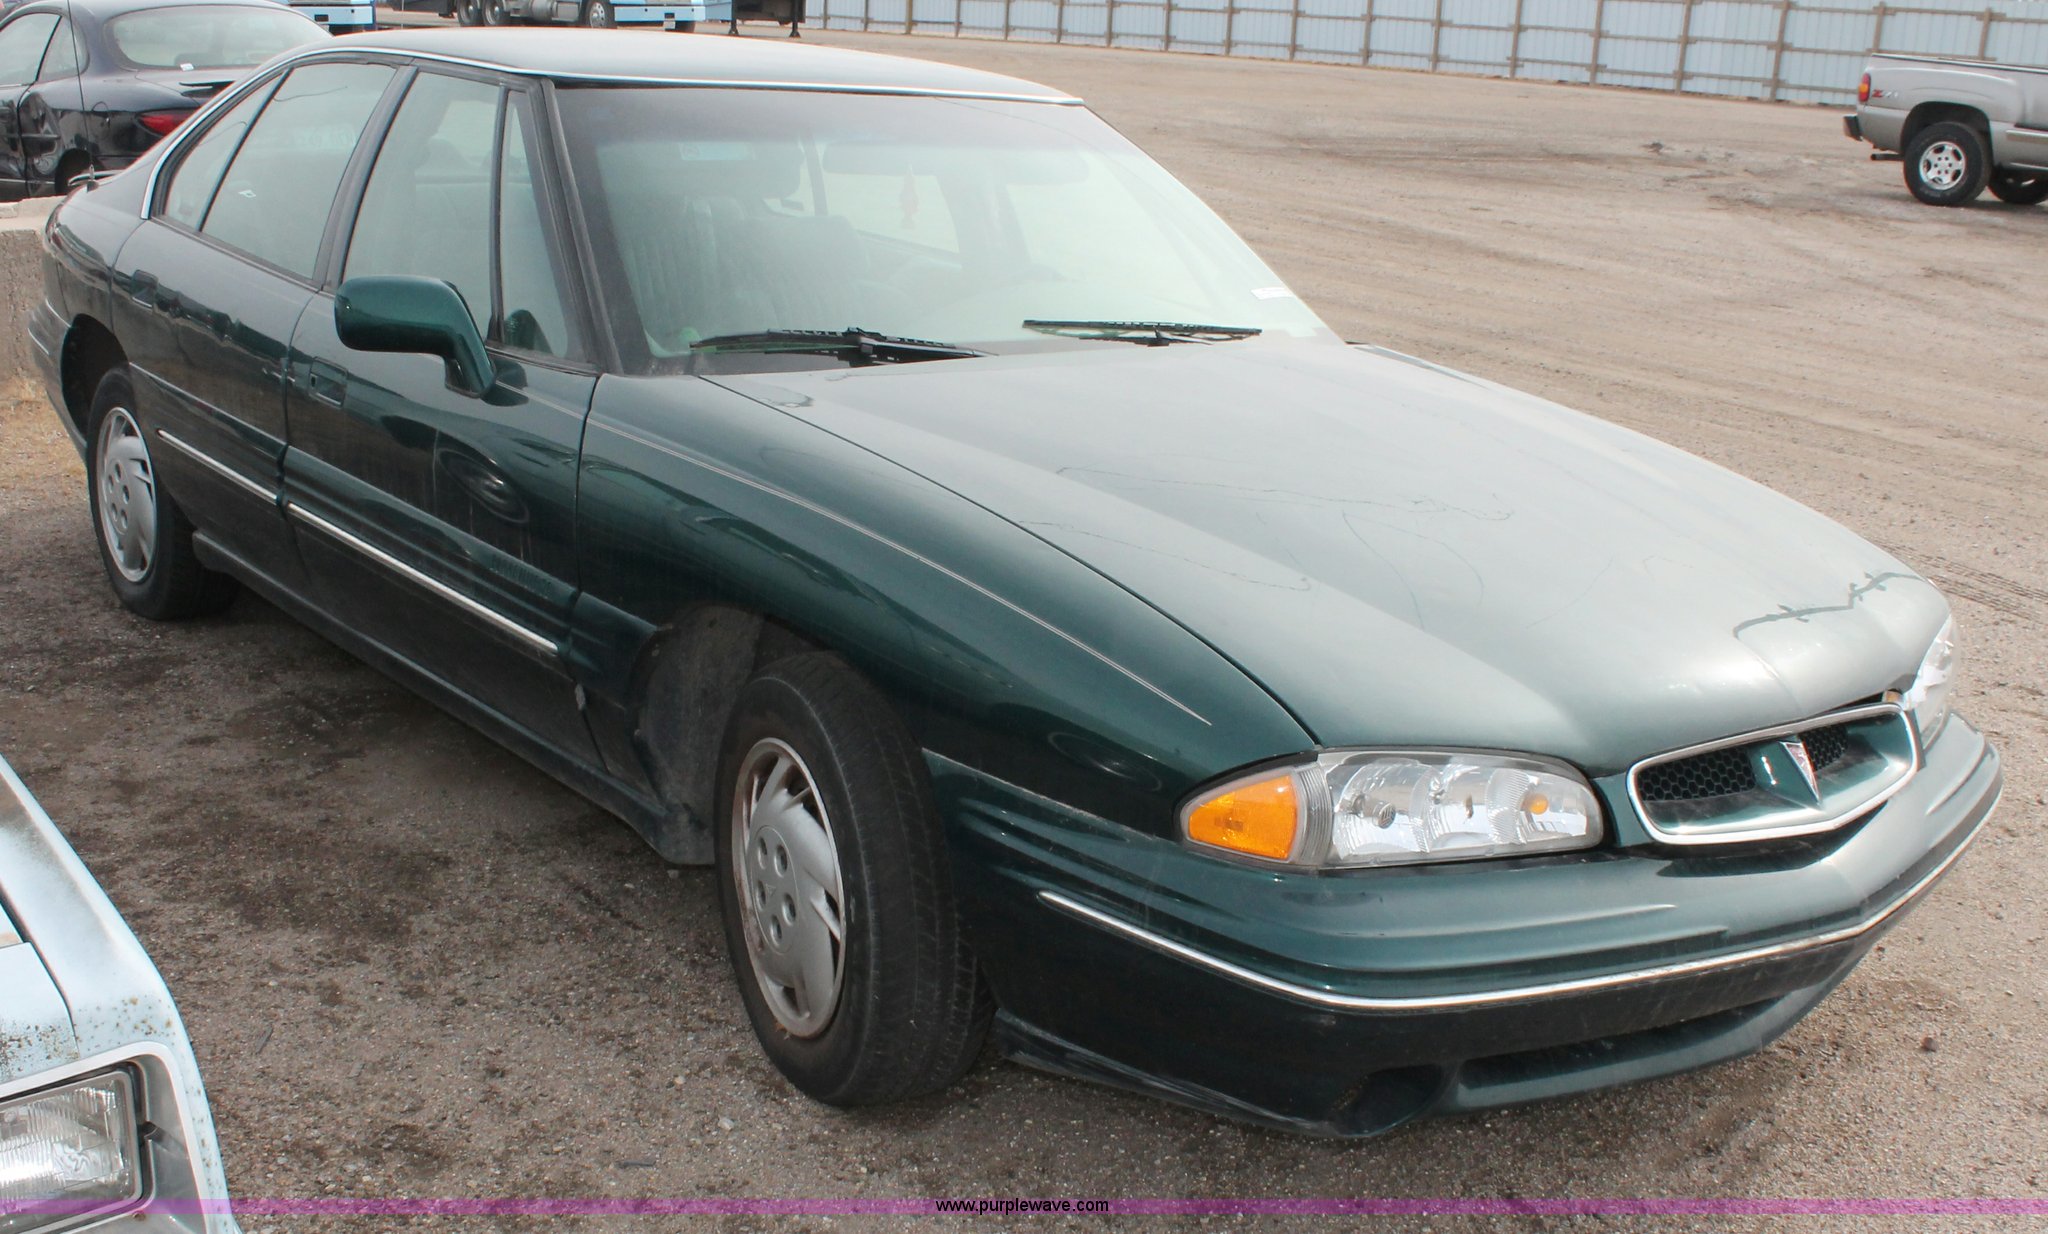 1999 Pontiac Bonneville SE in Wichita, KS | Item V9231 sold | Purple Wave